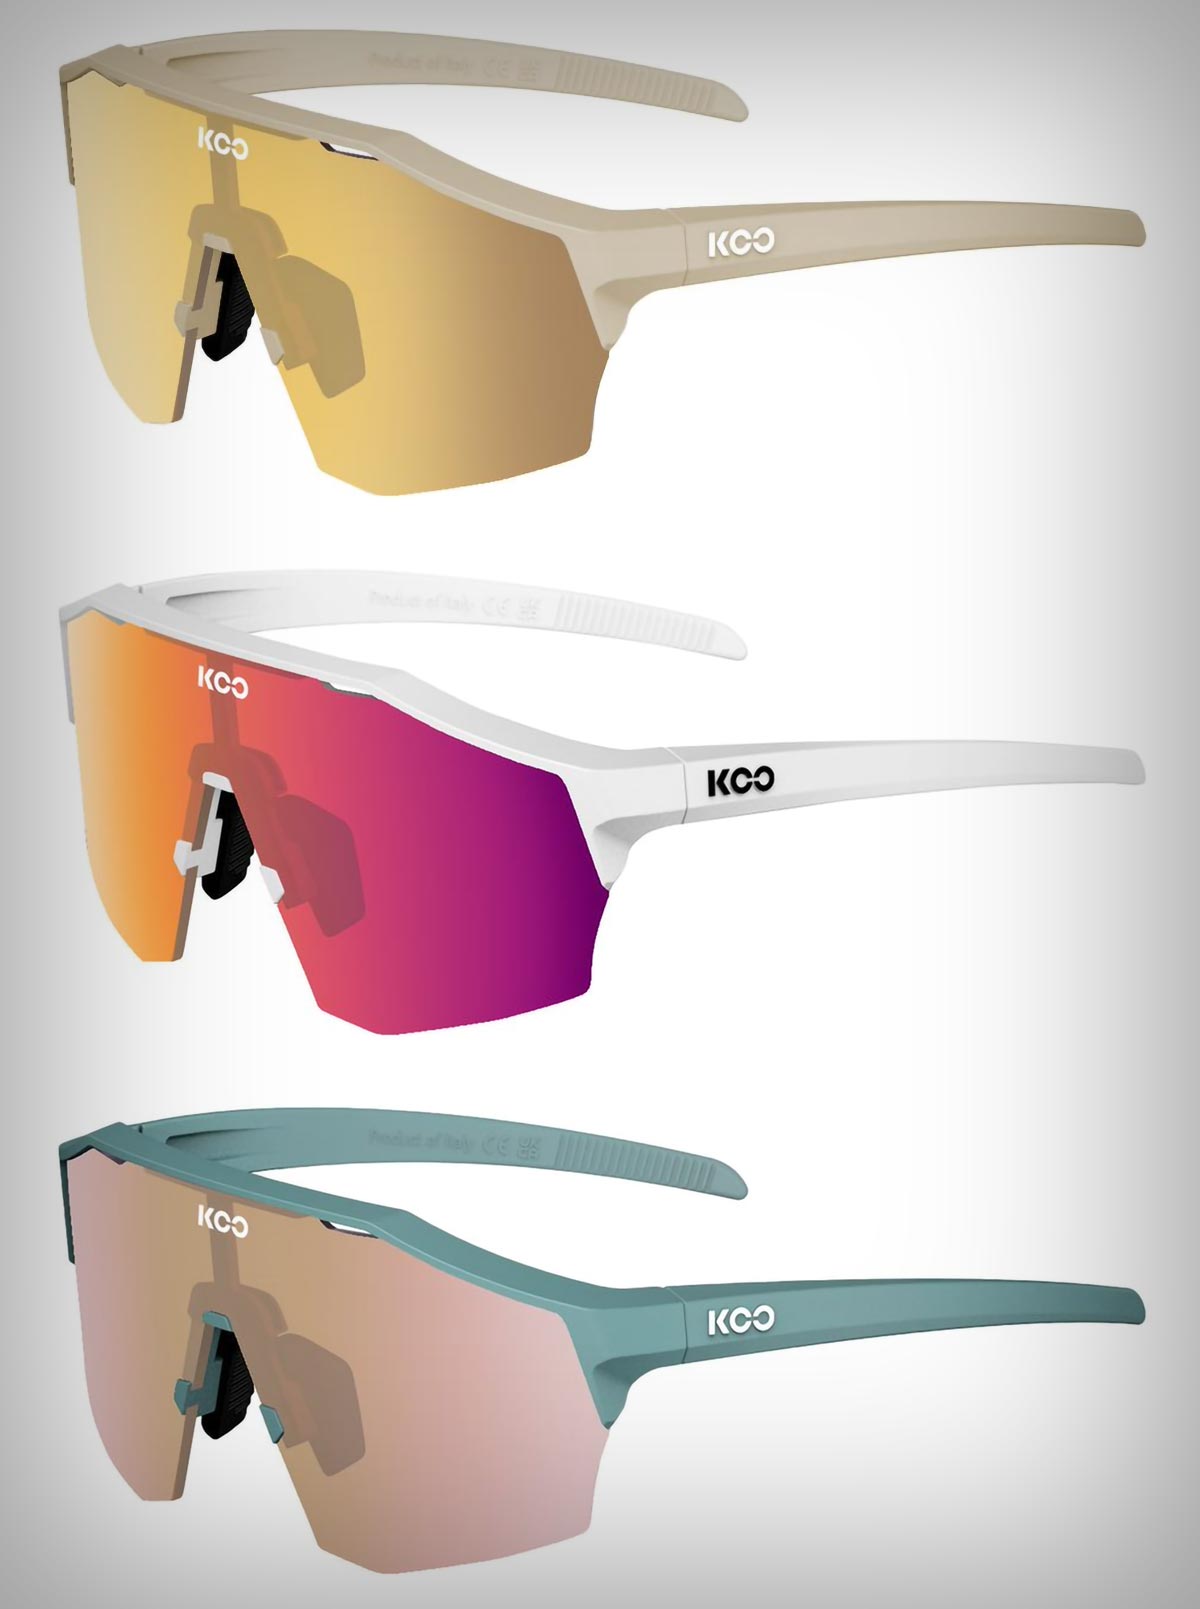 KOO Alibi: unas gafas con lentes Zeiss, diseño de media montura y versiones específicas para MTB y carretera